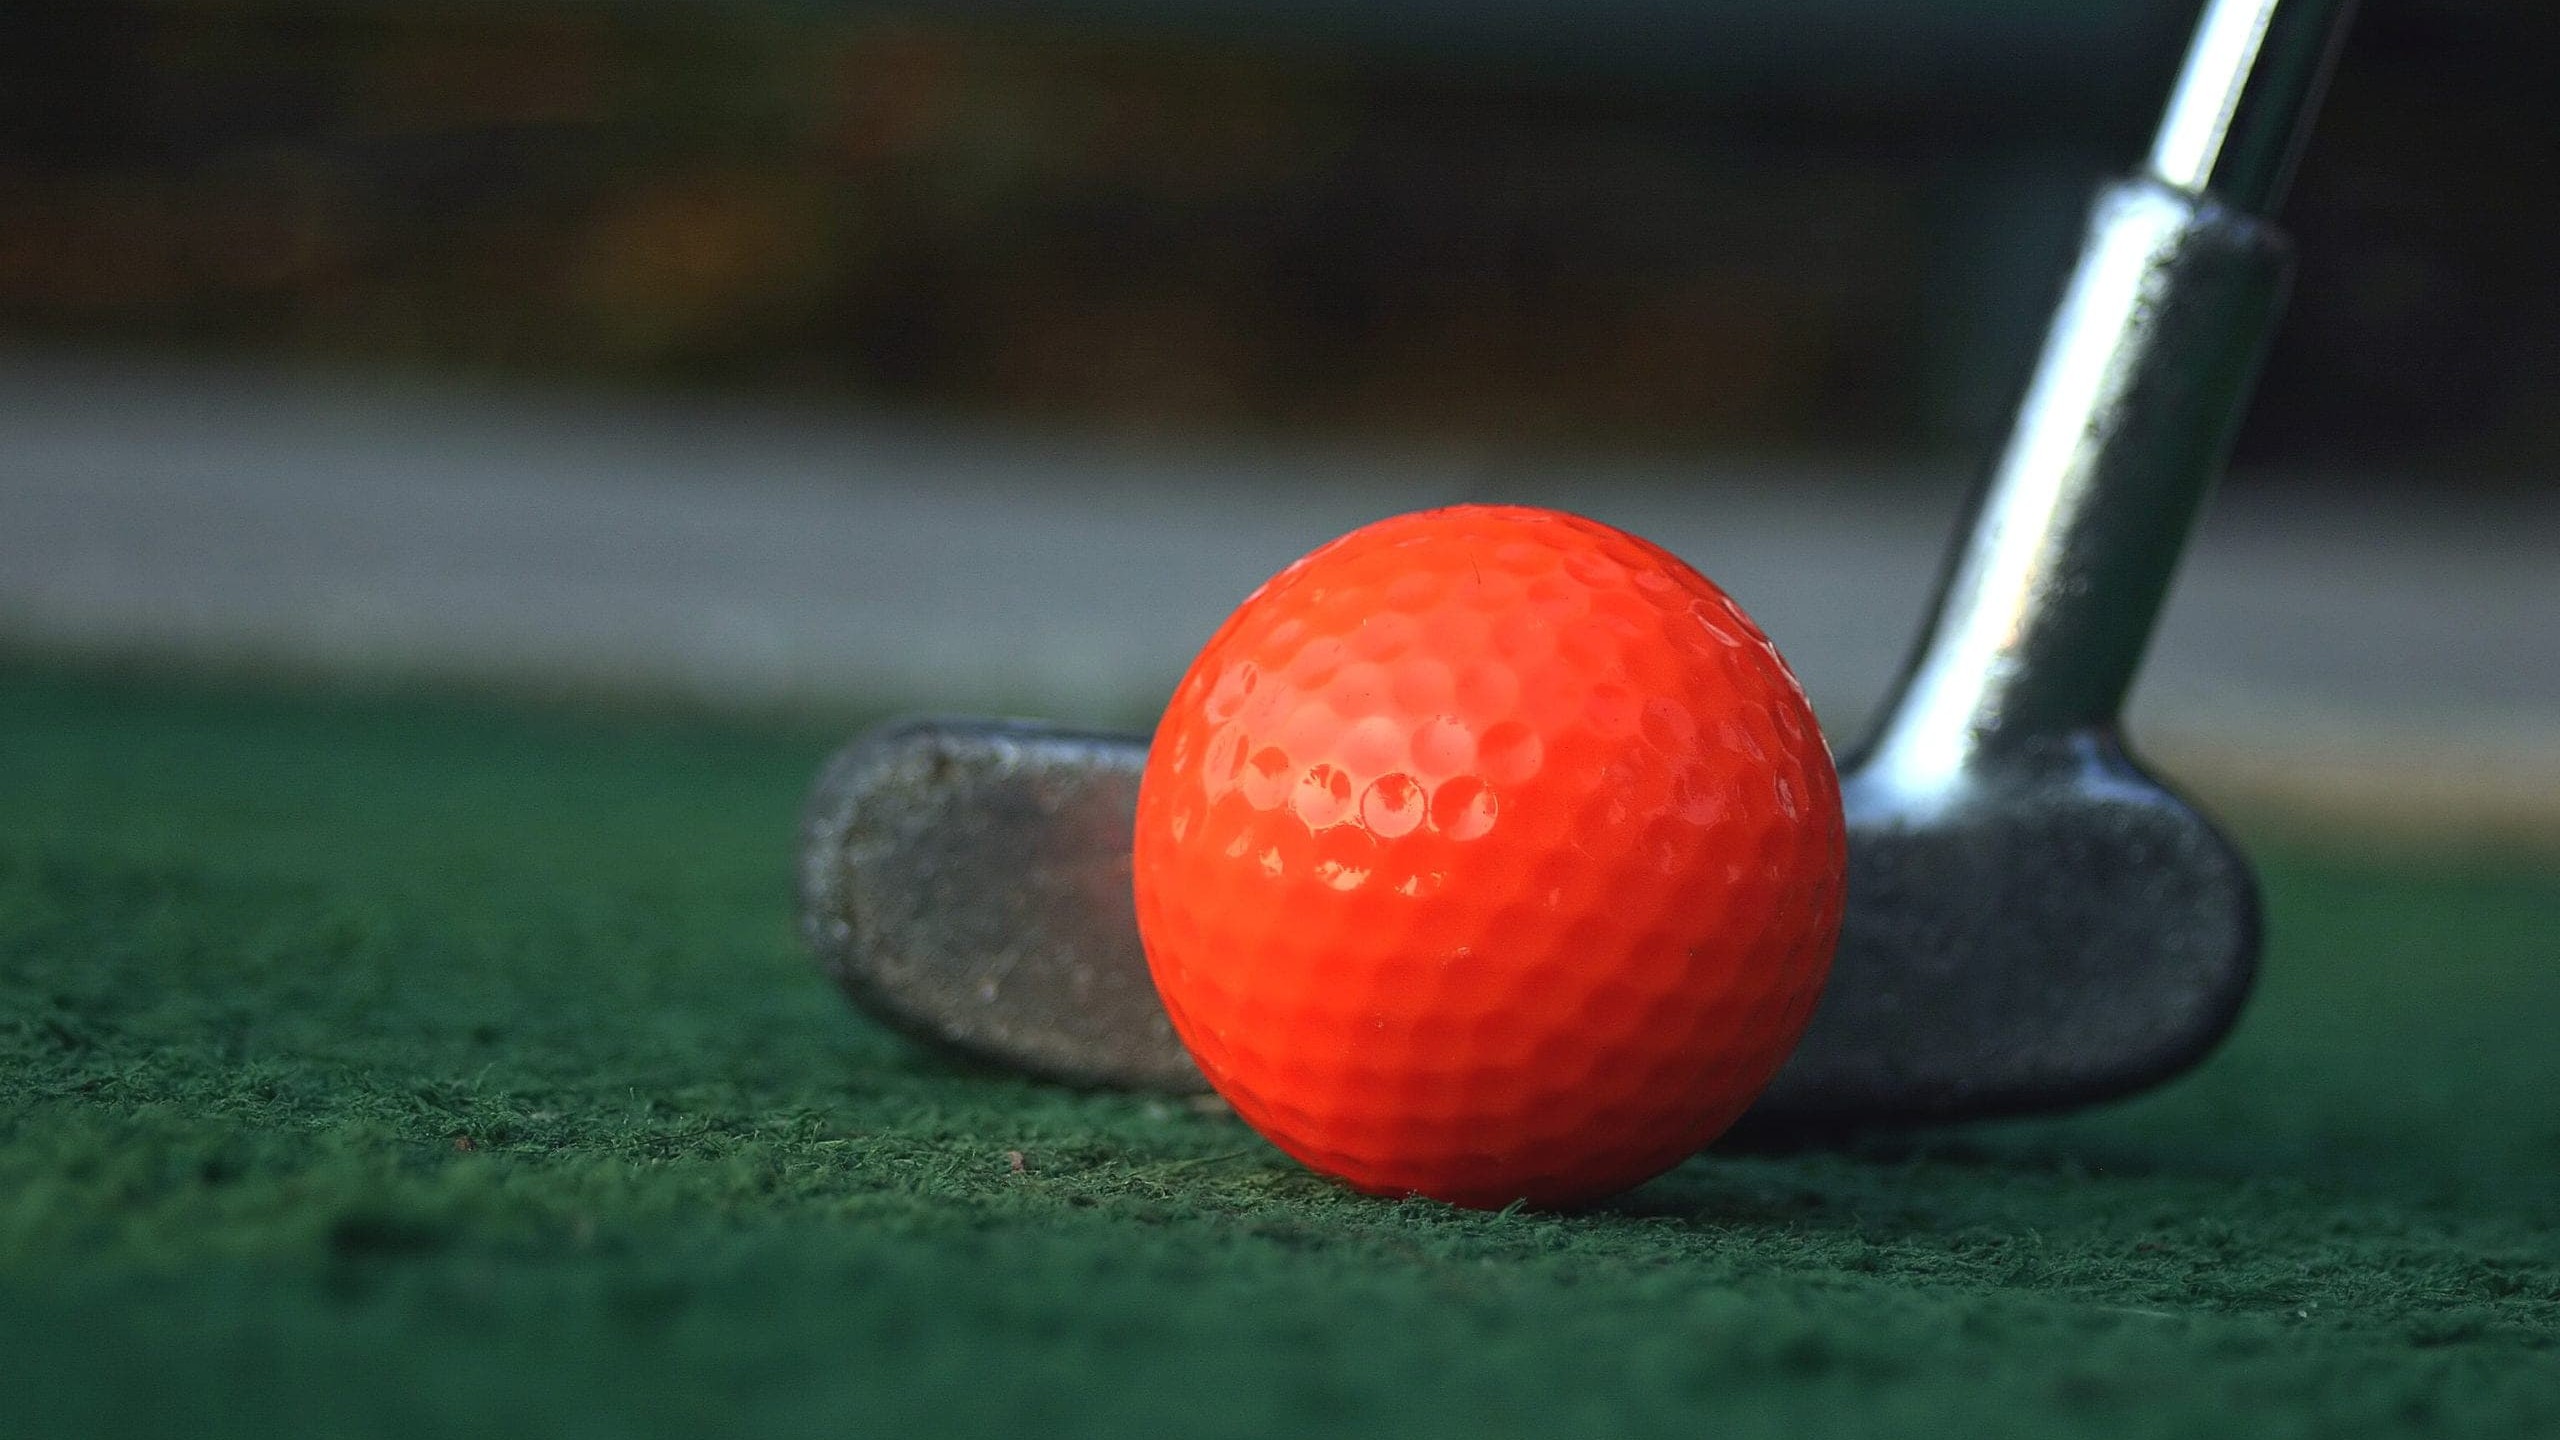 A golf ball and putter close-up.